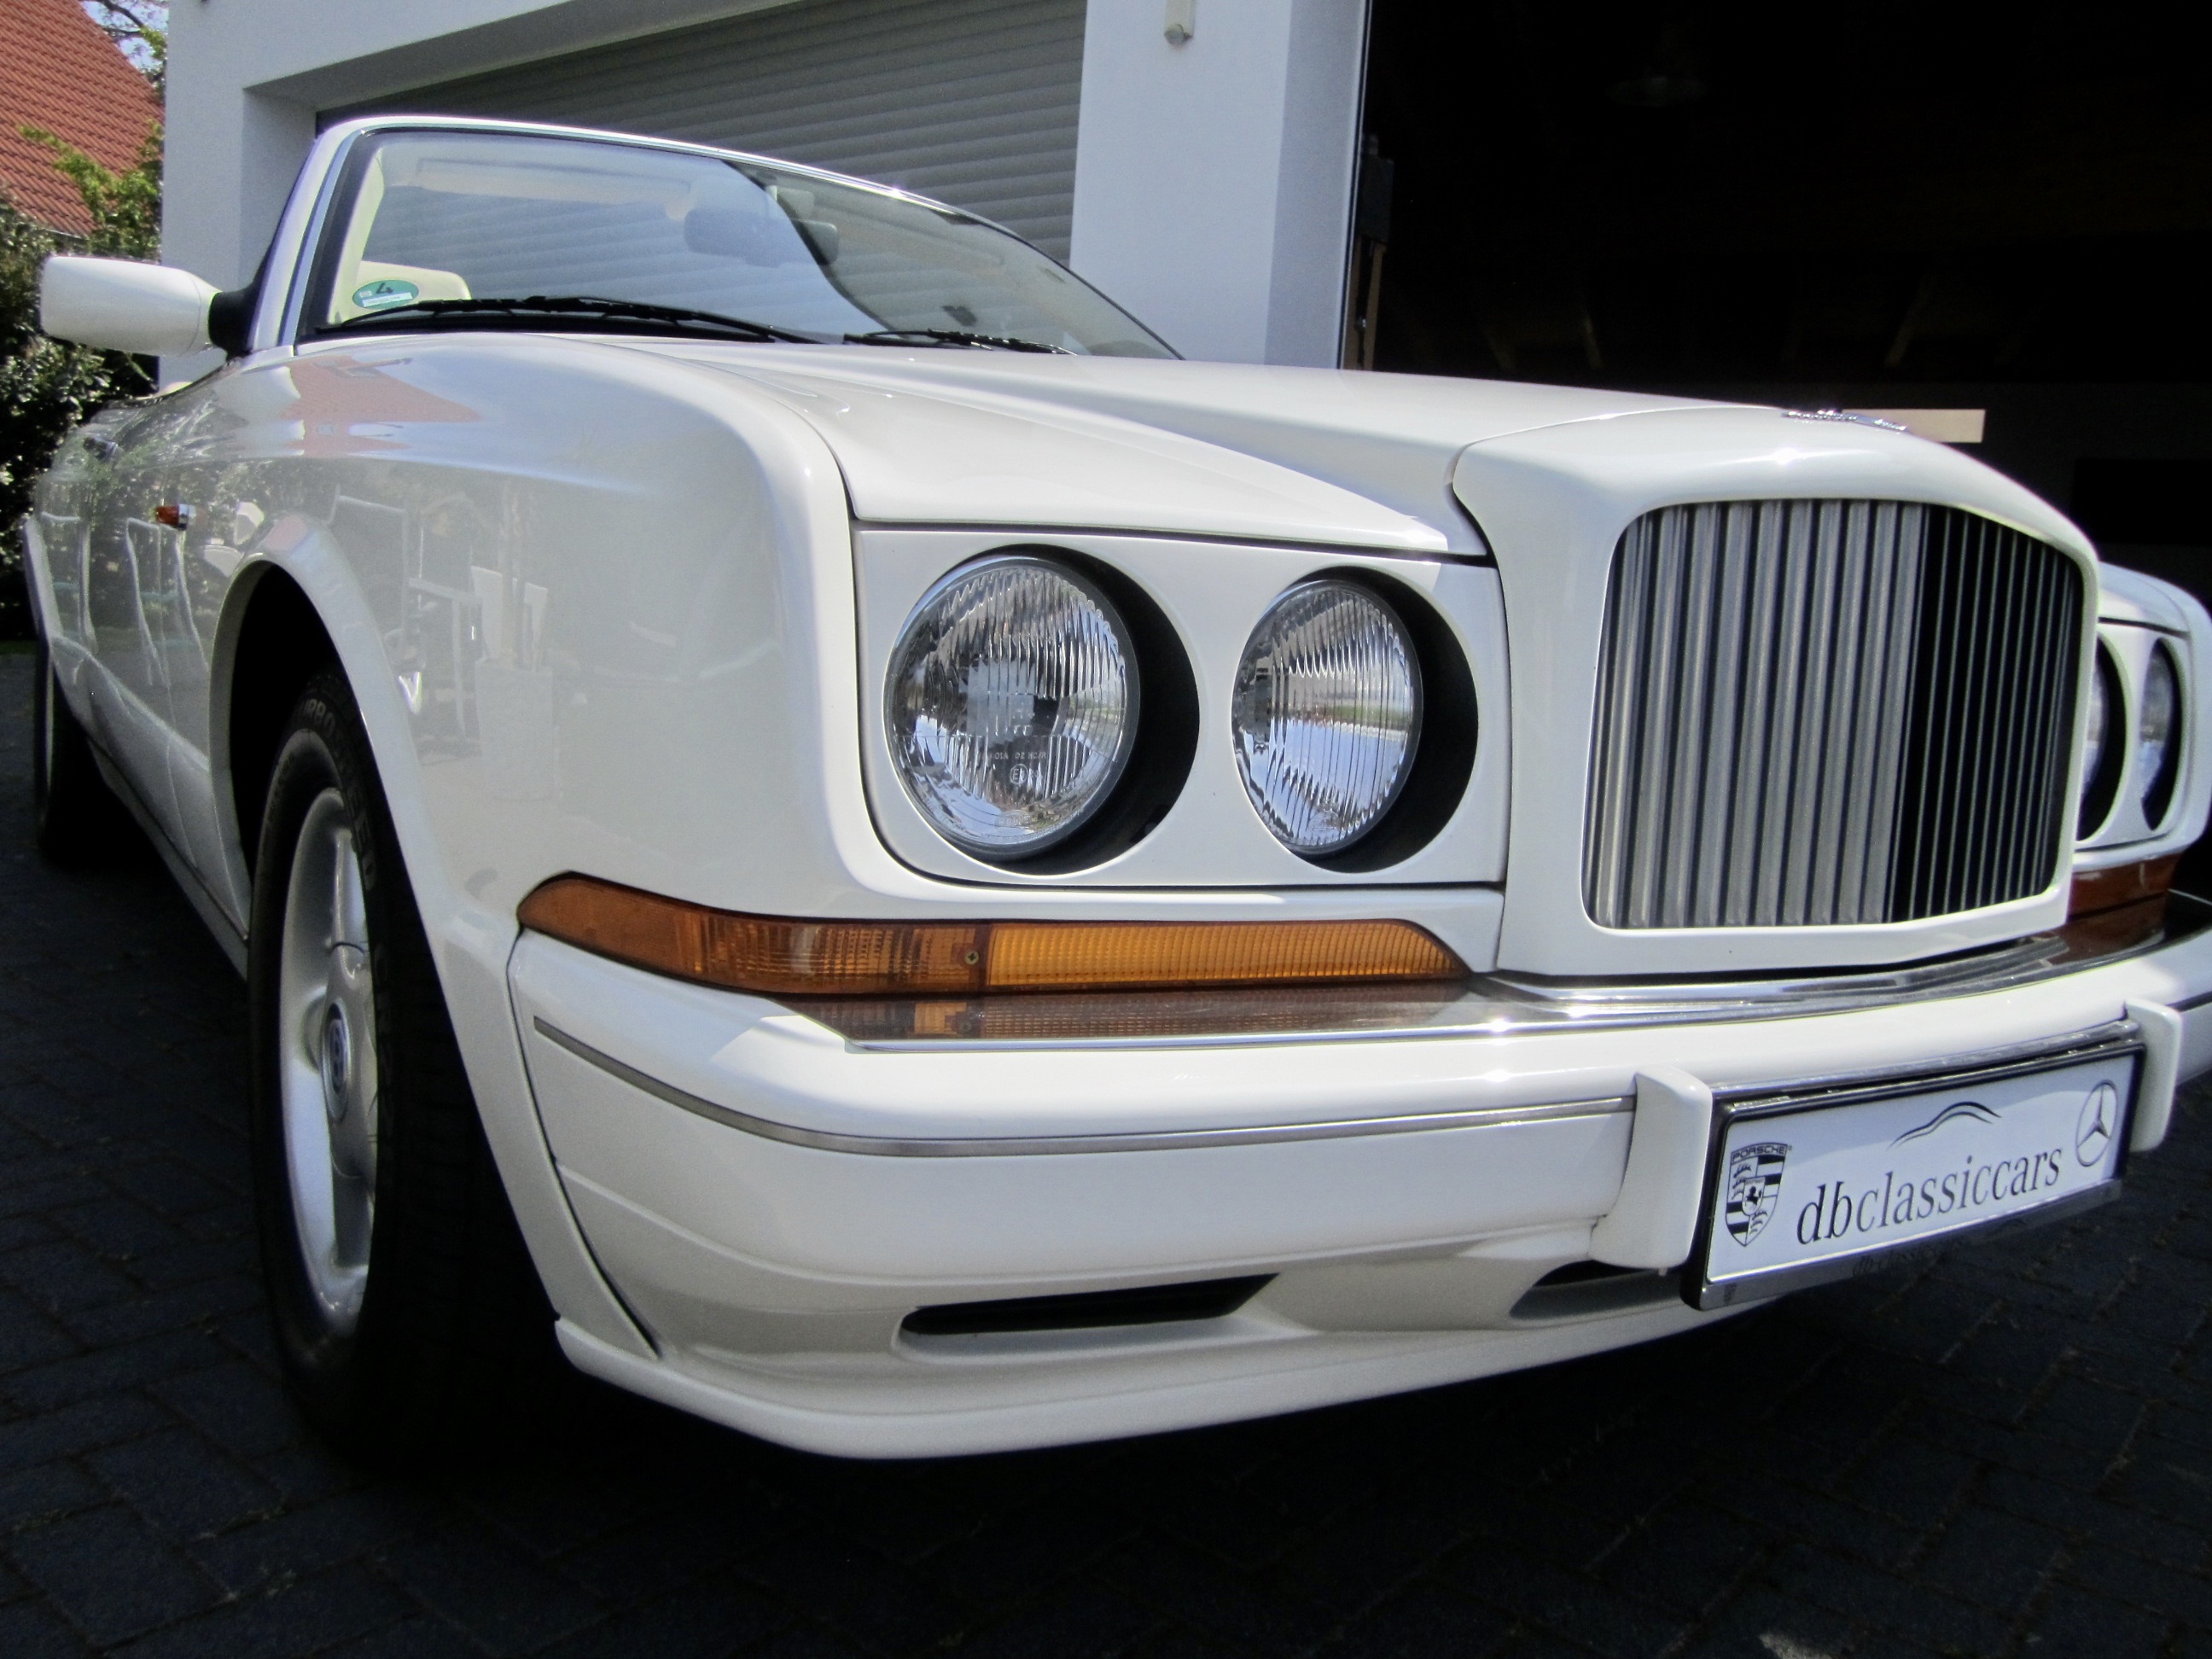 https://www.db-classic-cars.de/files/Bentley/9802E19C-2590-4172-BCF4-3793109C728D_1_201_a.jpeg